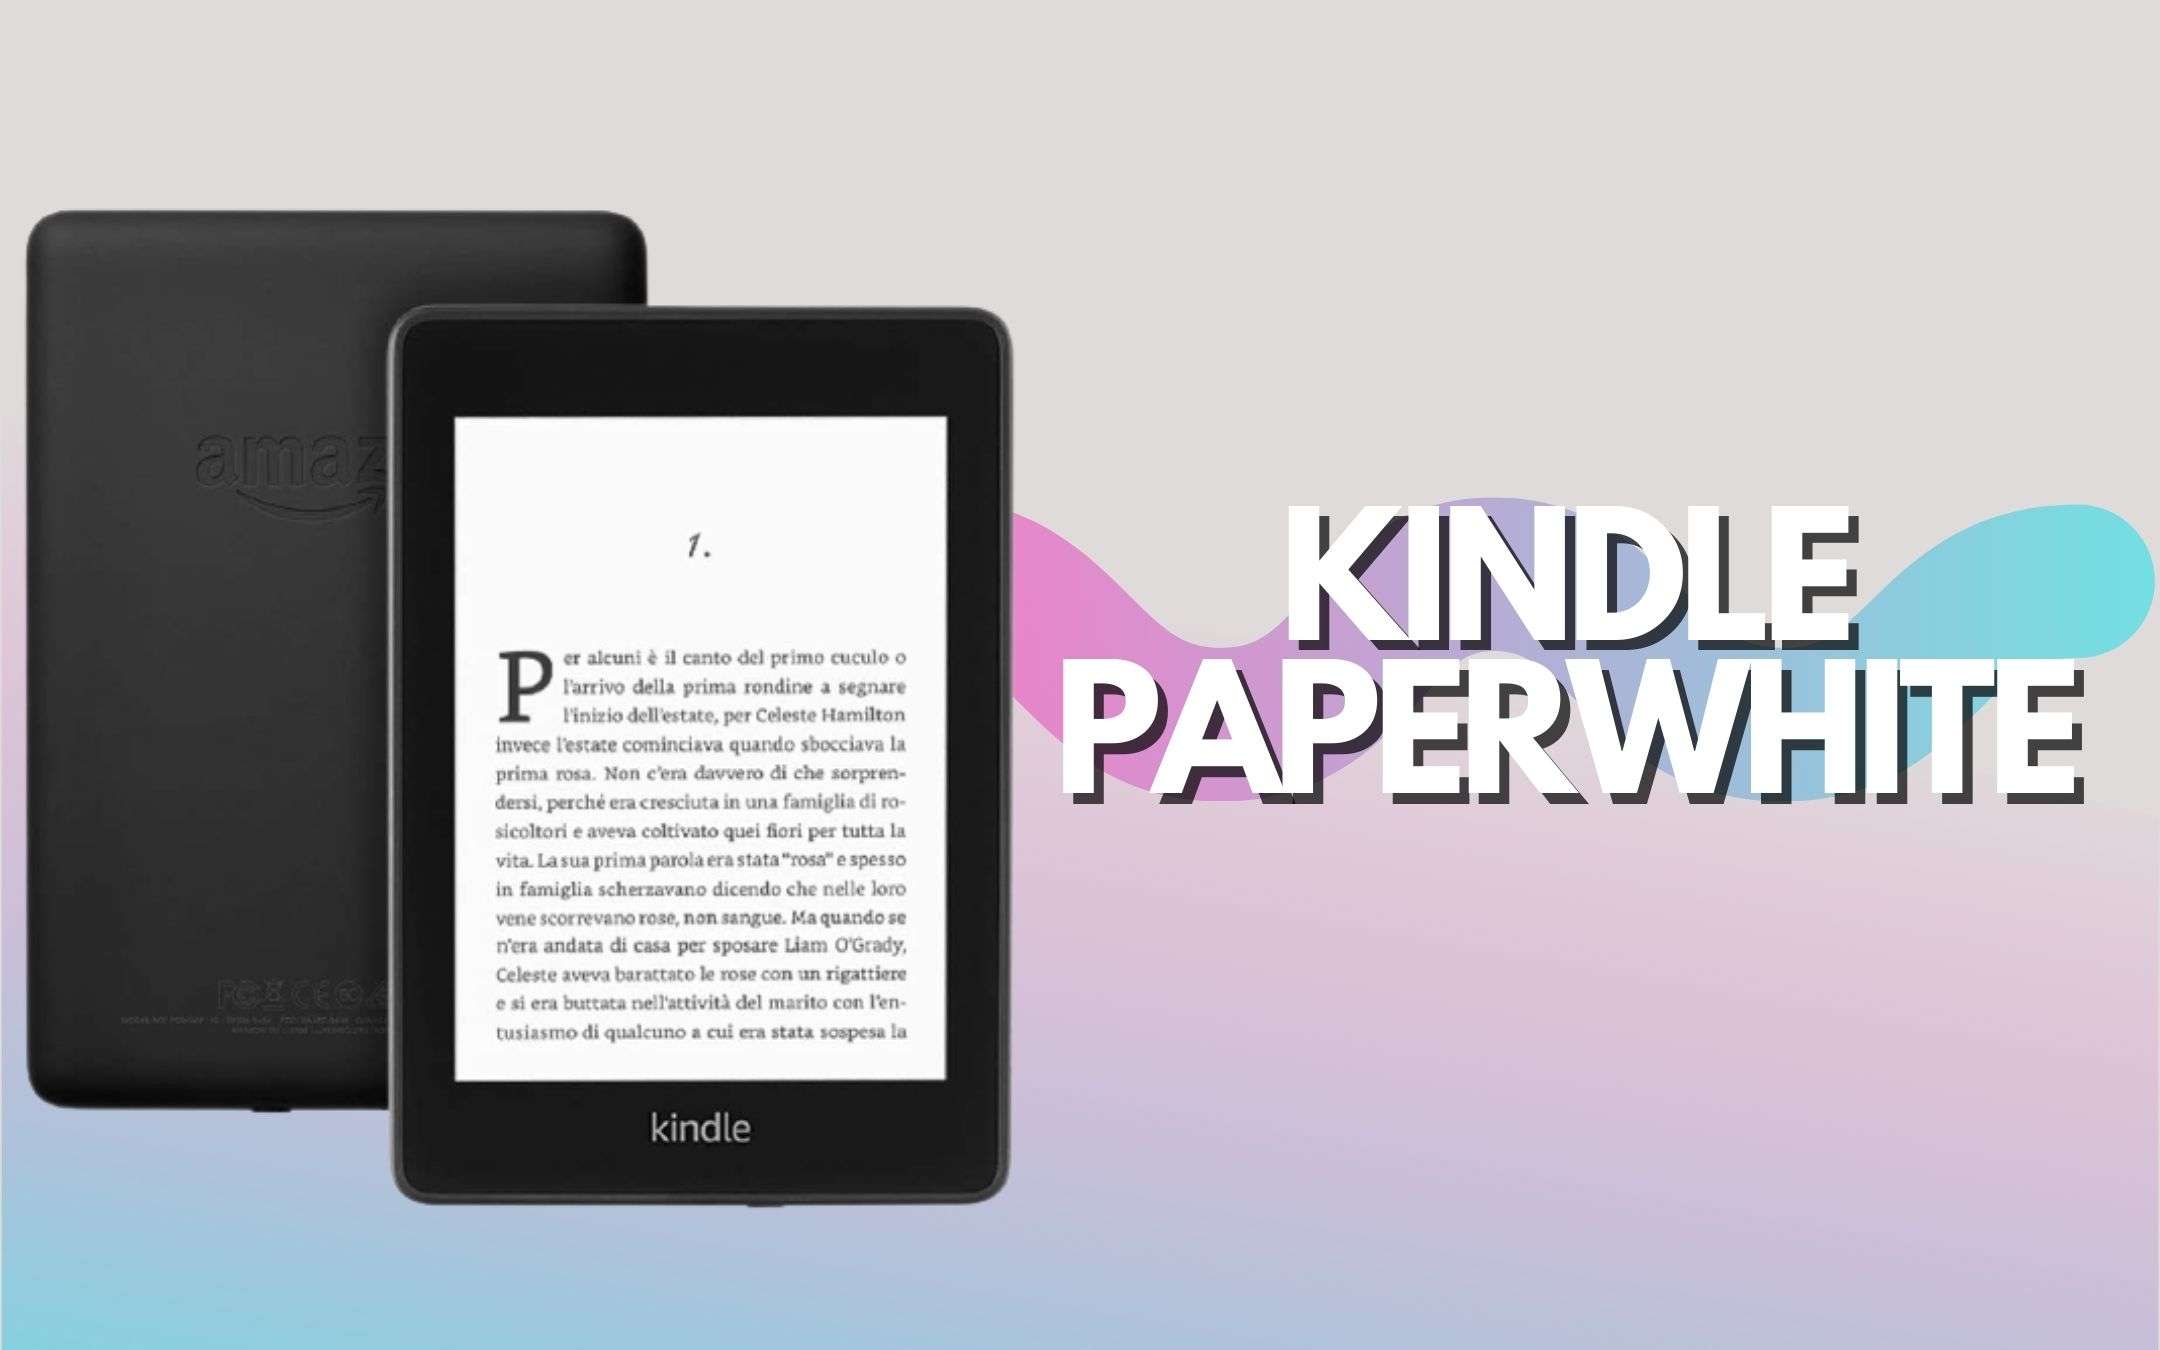 Kindle Paperwhite torna in offerta a prezzo BOMBA